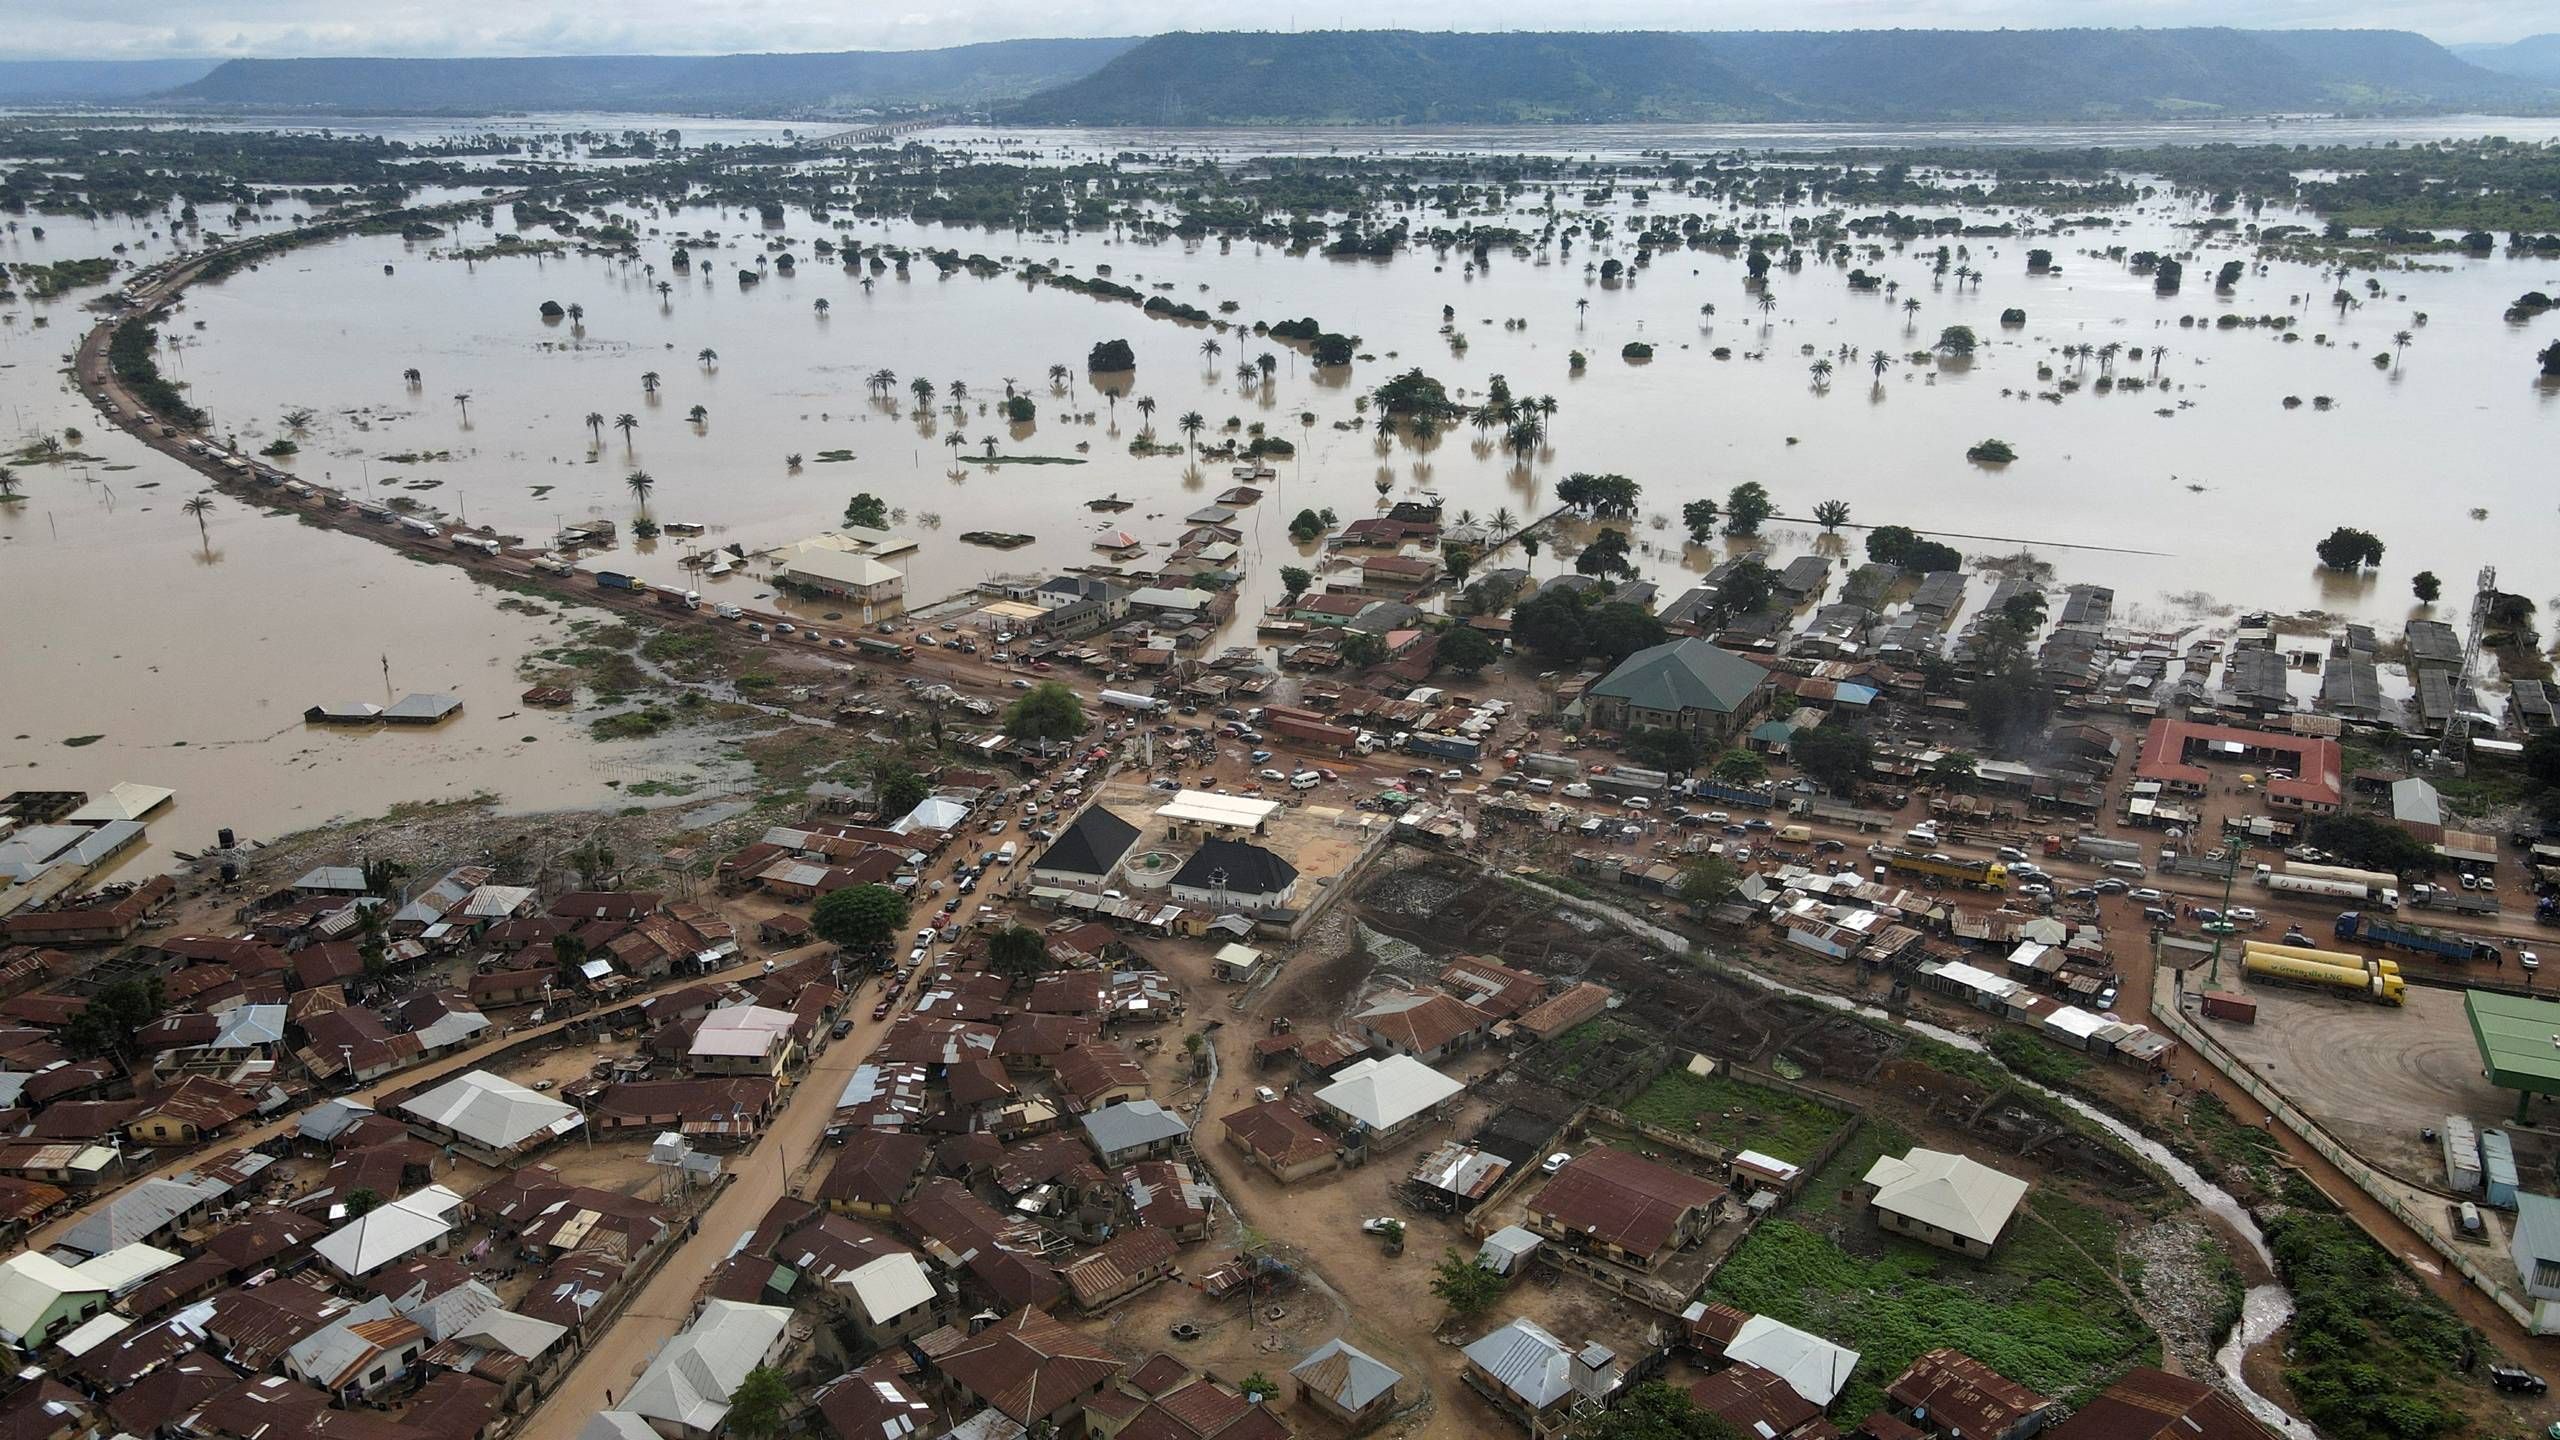 væv Marine fokus Over 600 dør i oversvømmelser i uforberedte nigerianske stater